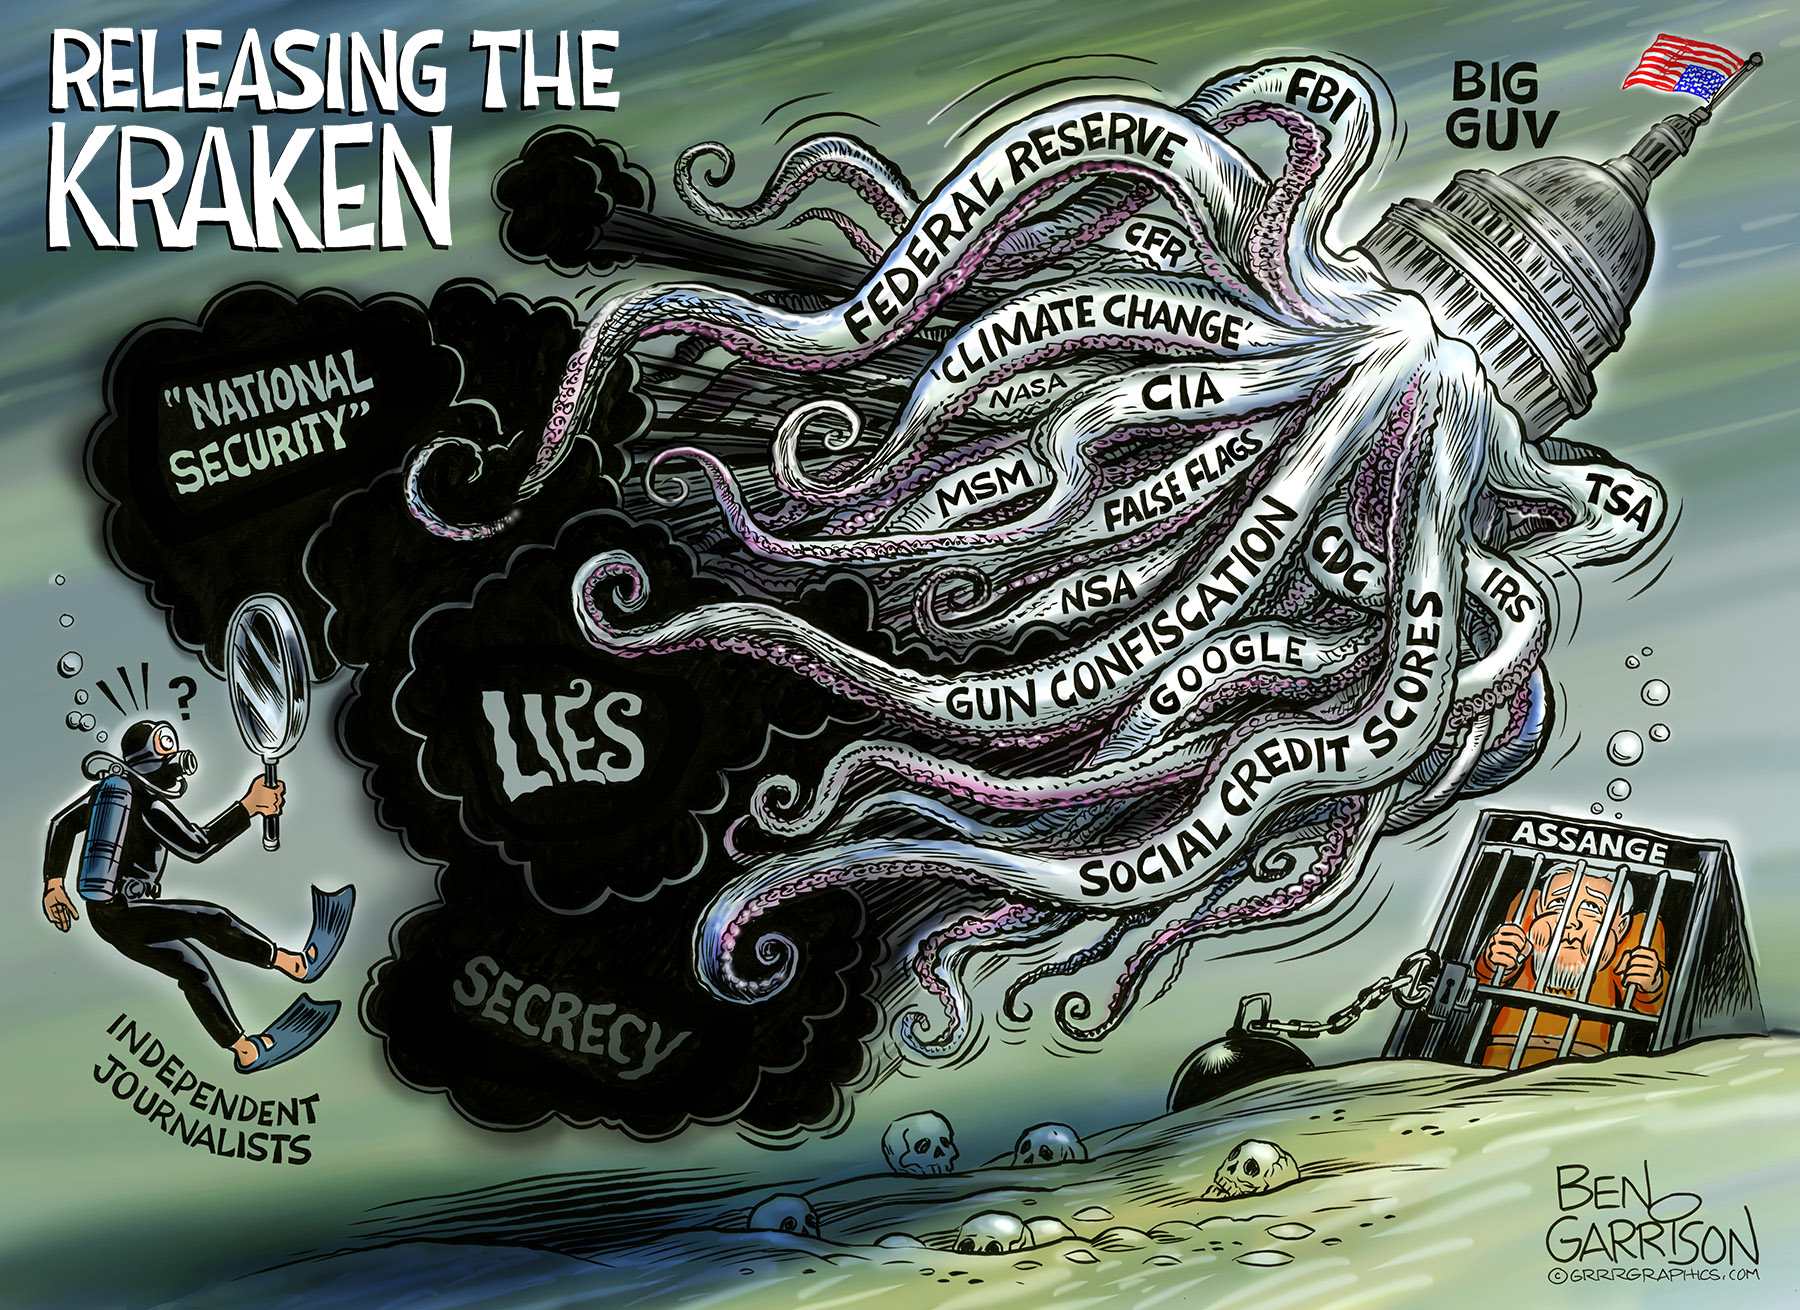 Ben Garrison. (ca. Sep. 10, 2019). Releasing the Kraken. Grrrgraphics.com.